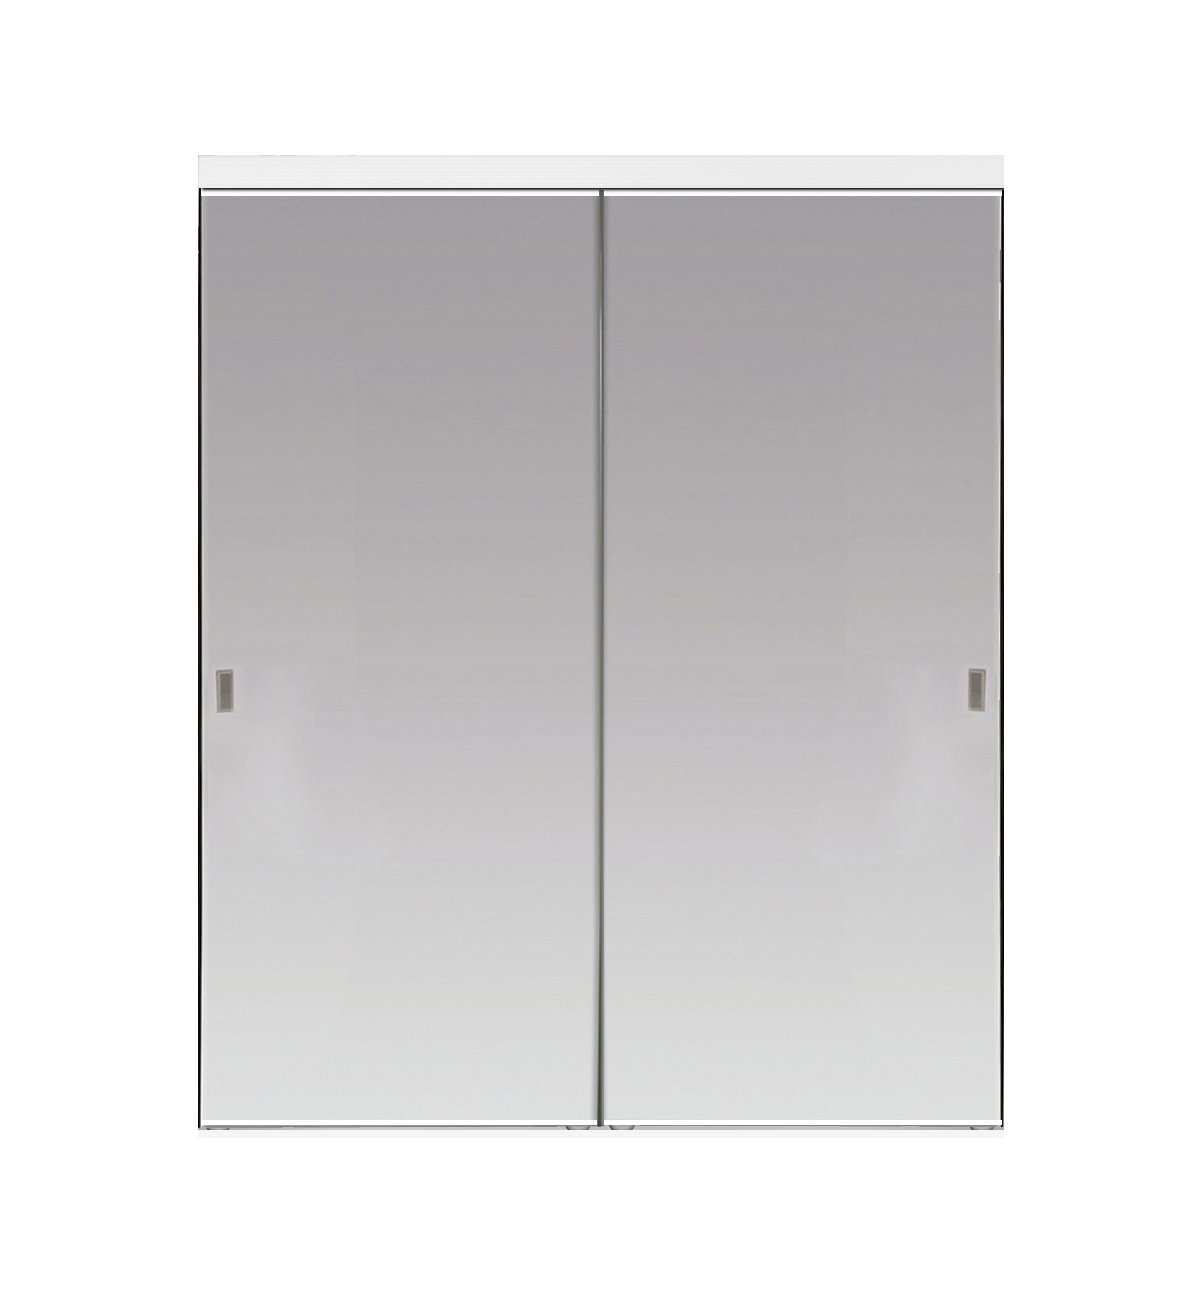 https://assets.wfcdn.com/im/16891212/compr-r85/6648/66482118/hollow-mirrored-sliding-closet-doors.jpg